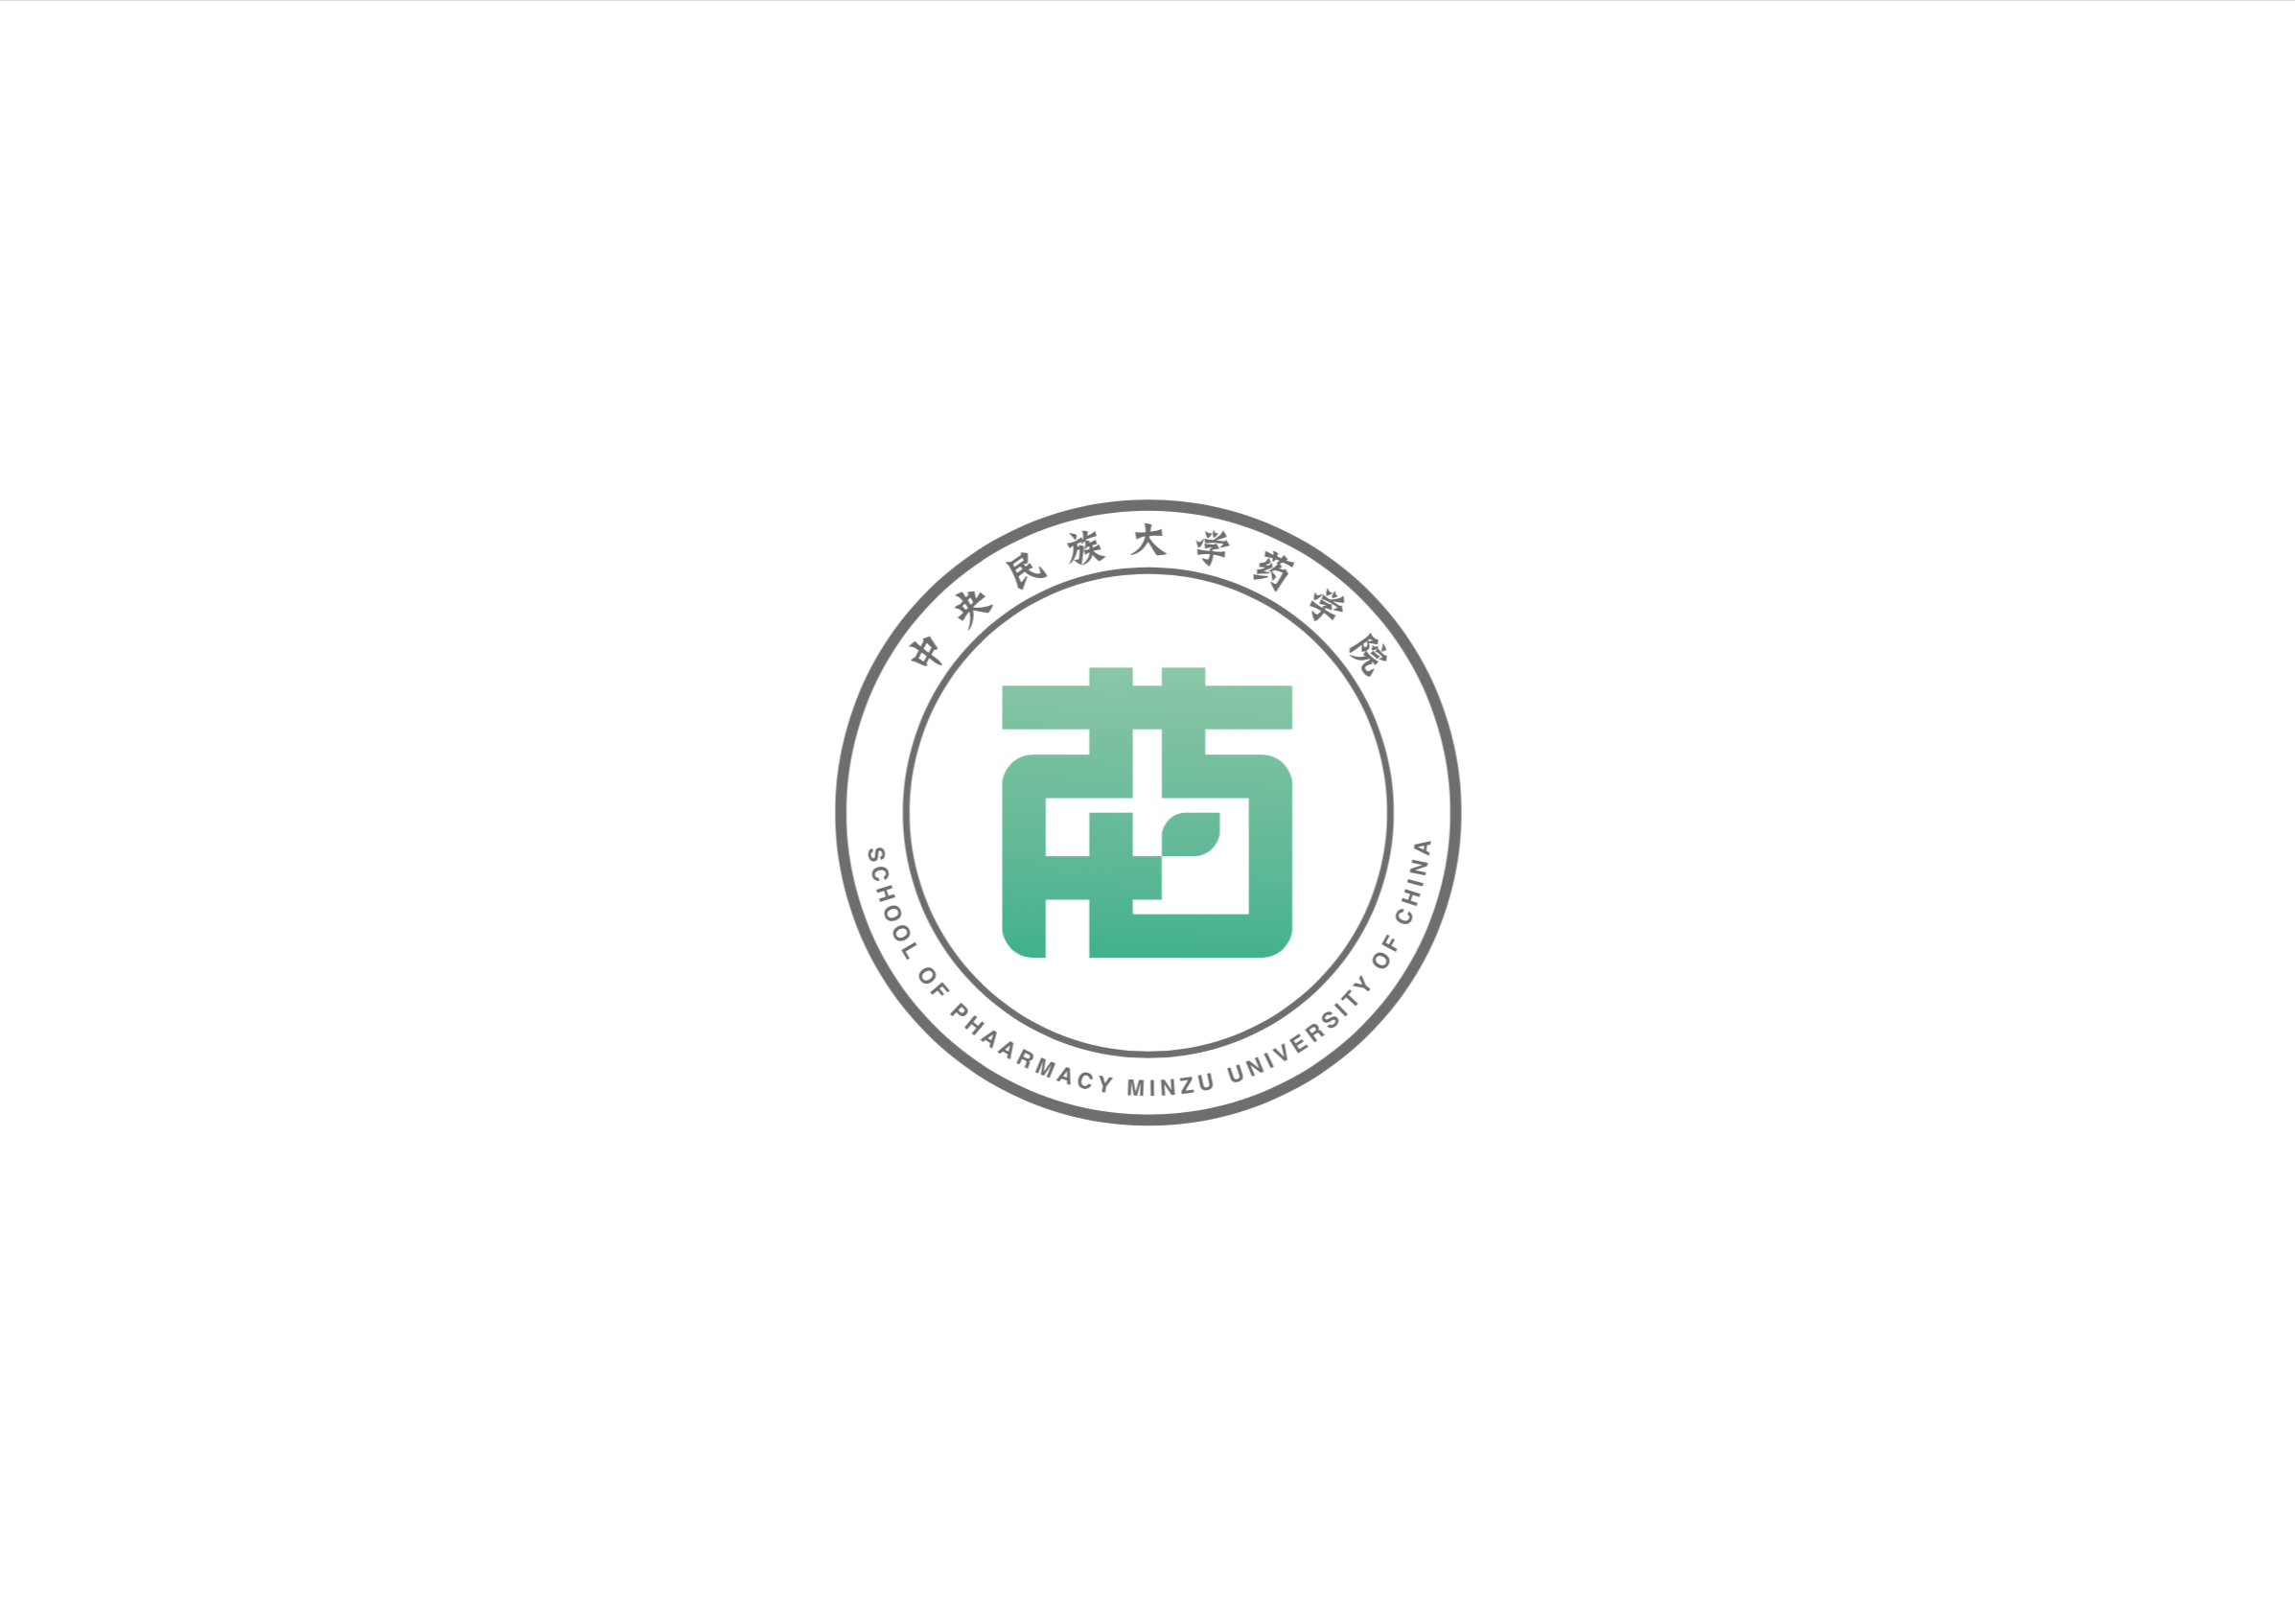 中央民族大学药学院标志(logo)设计 vi视觉设计